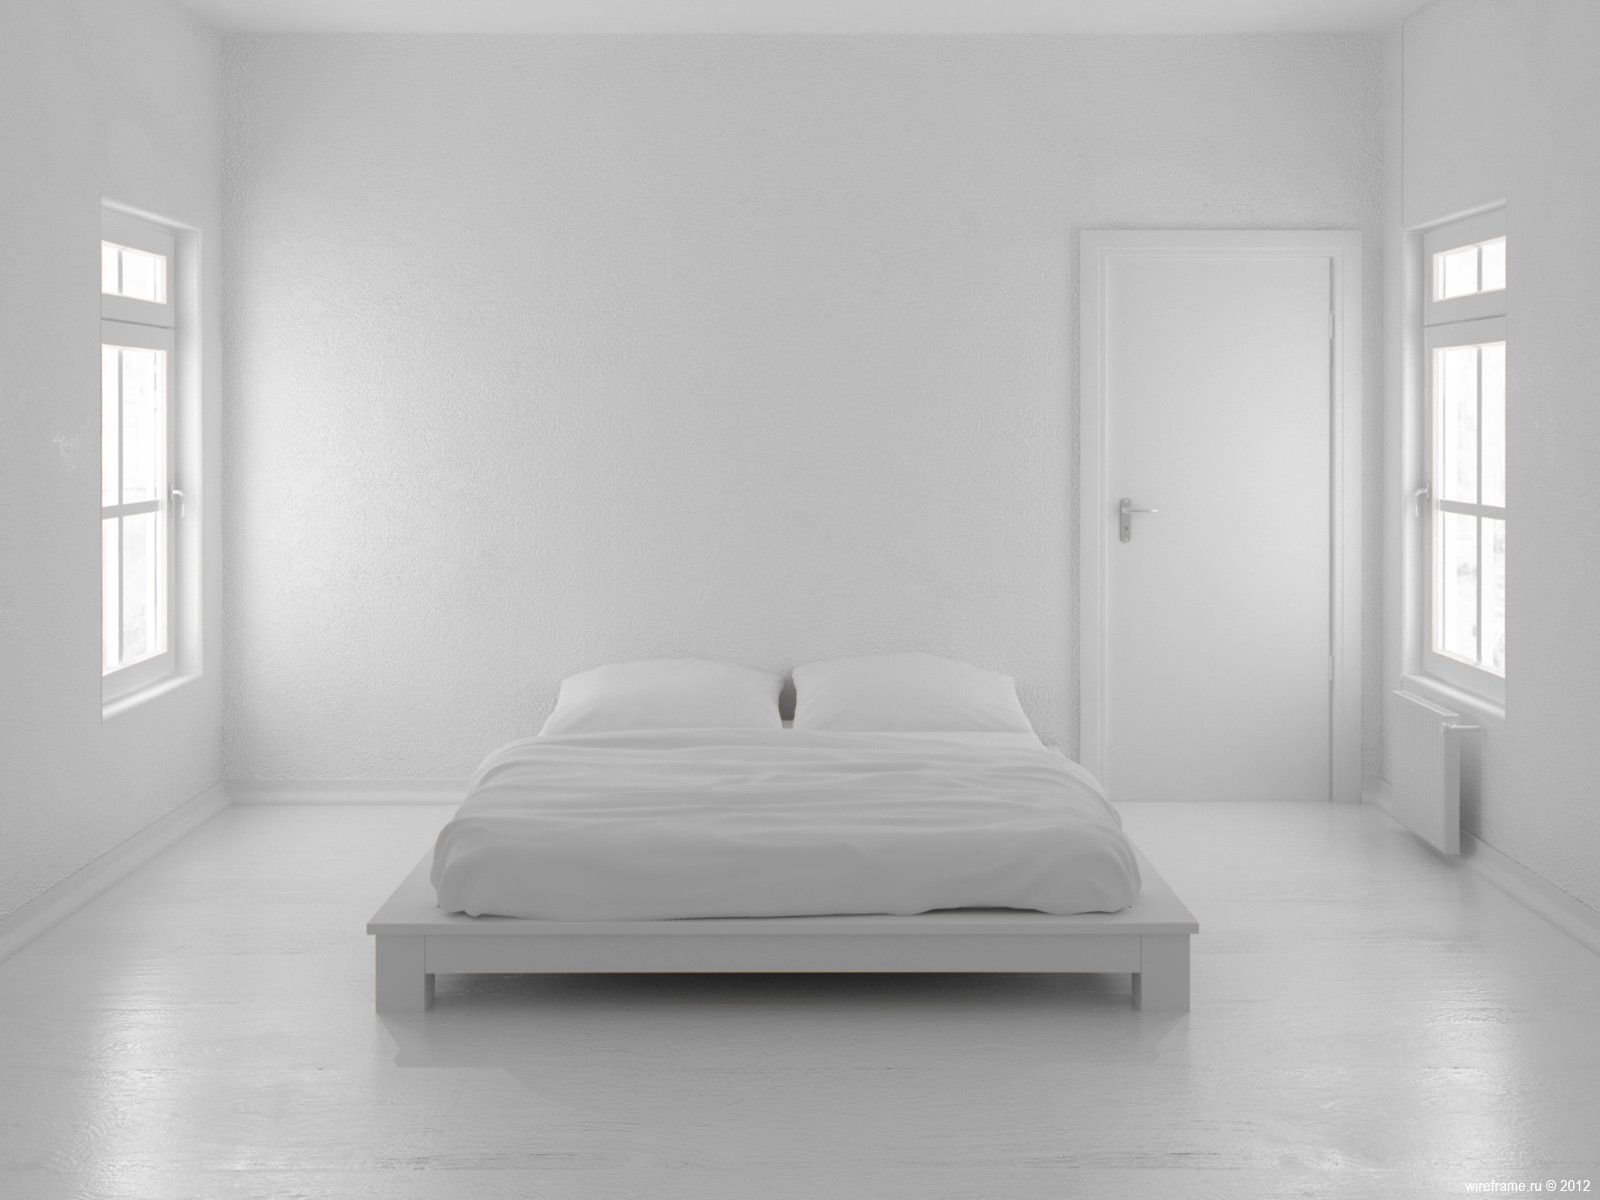 Идеально белый цвет. Белая комната. Белый ком. Комната с белыми стенами. Белая спальня Минимализм.